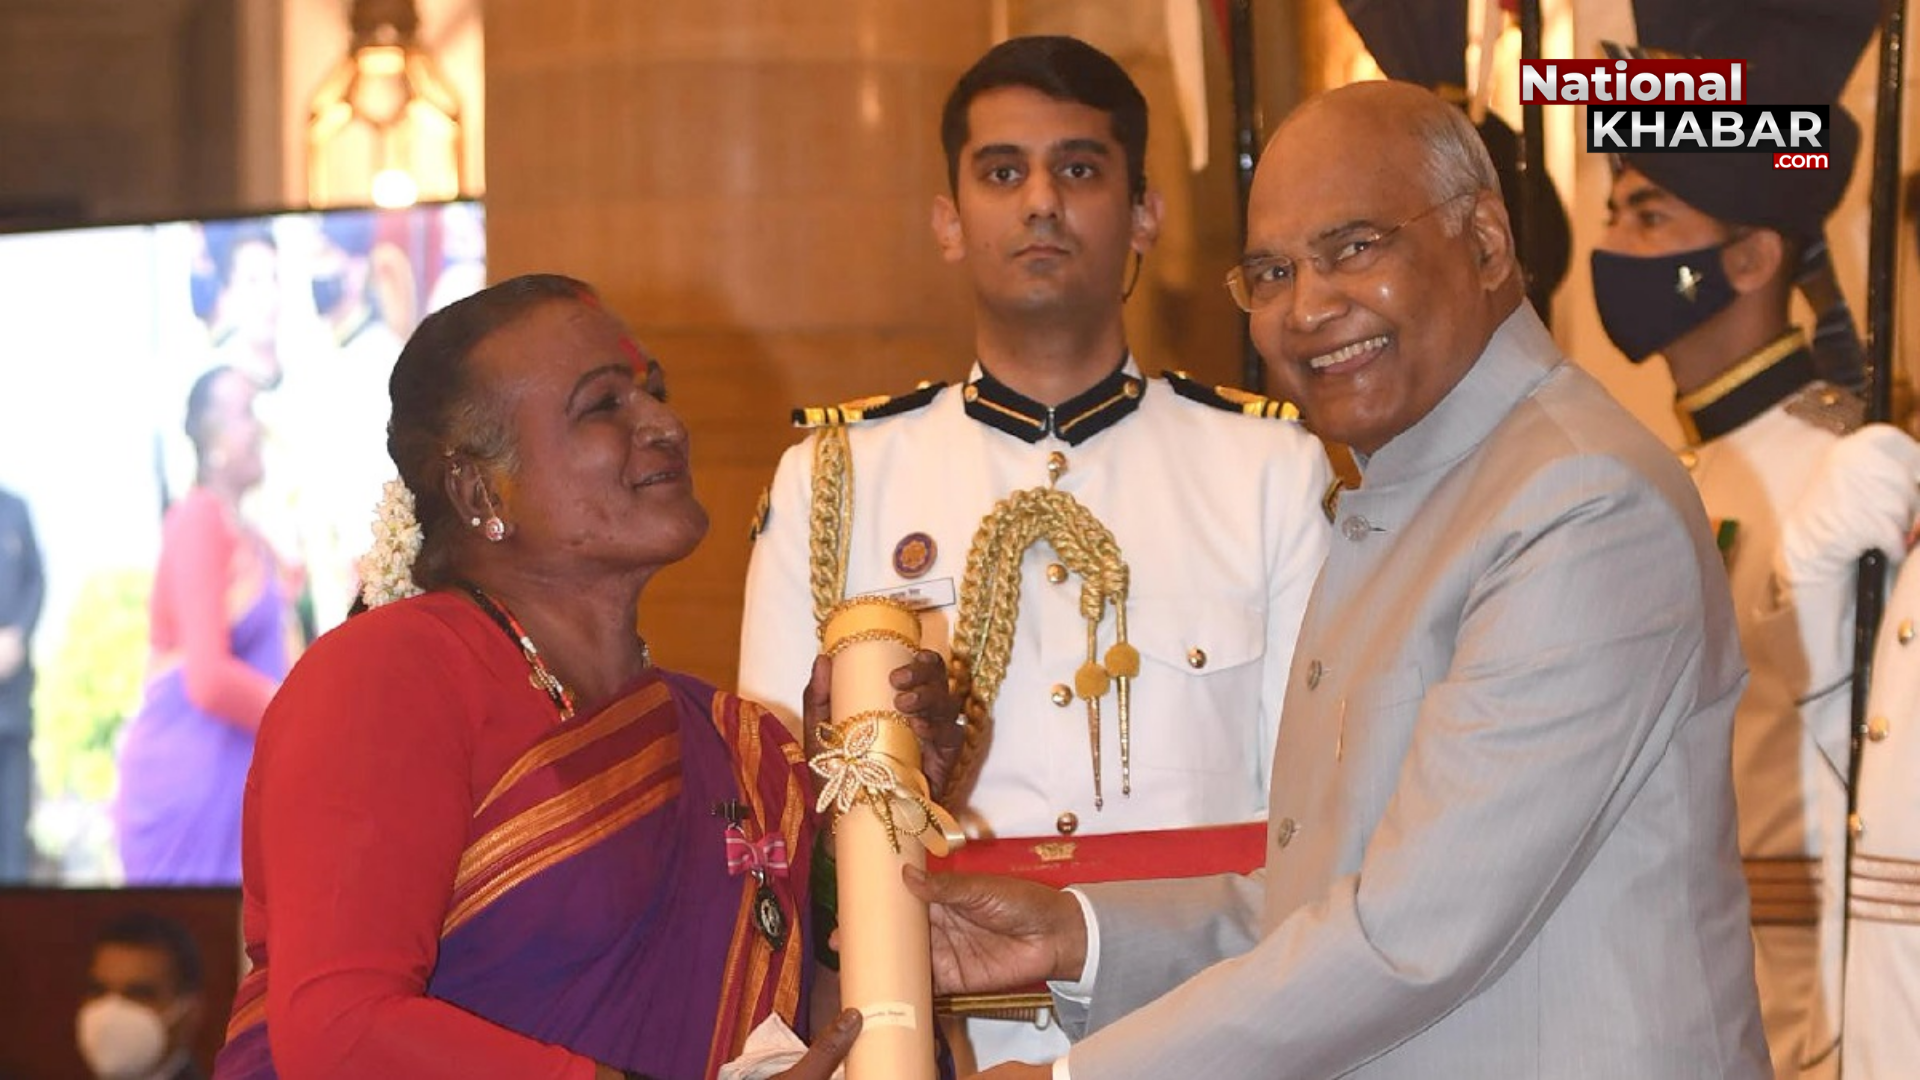 पद्म पुरस्कार प्राप्त करते हुए ट्रांसजेंडर मंजम्मा जोगती ने राष्ट्रपति कोविंद को अनोखे अंदाज में सम्मान दिया